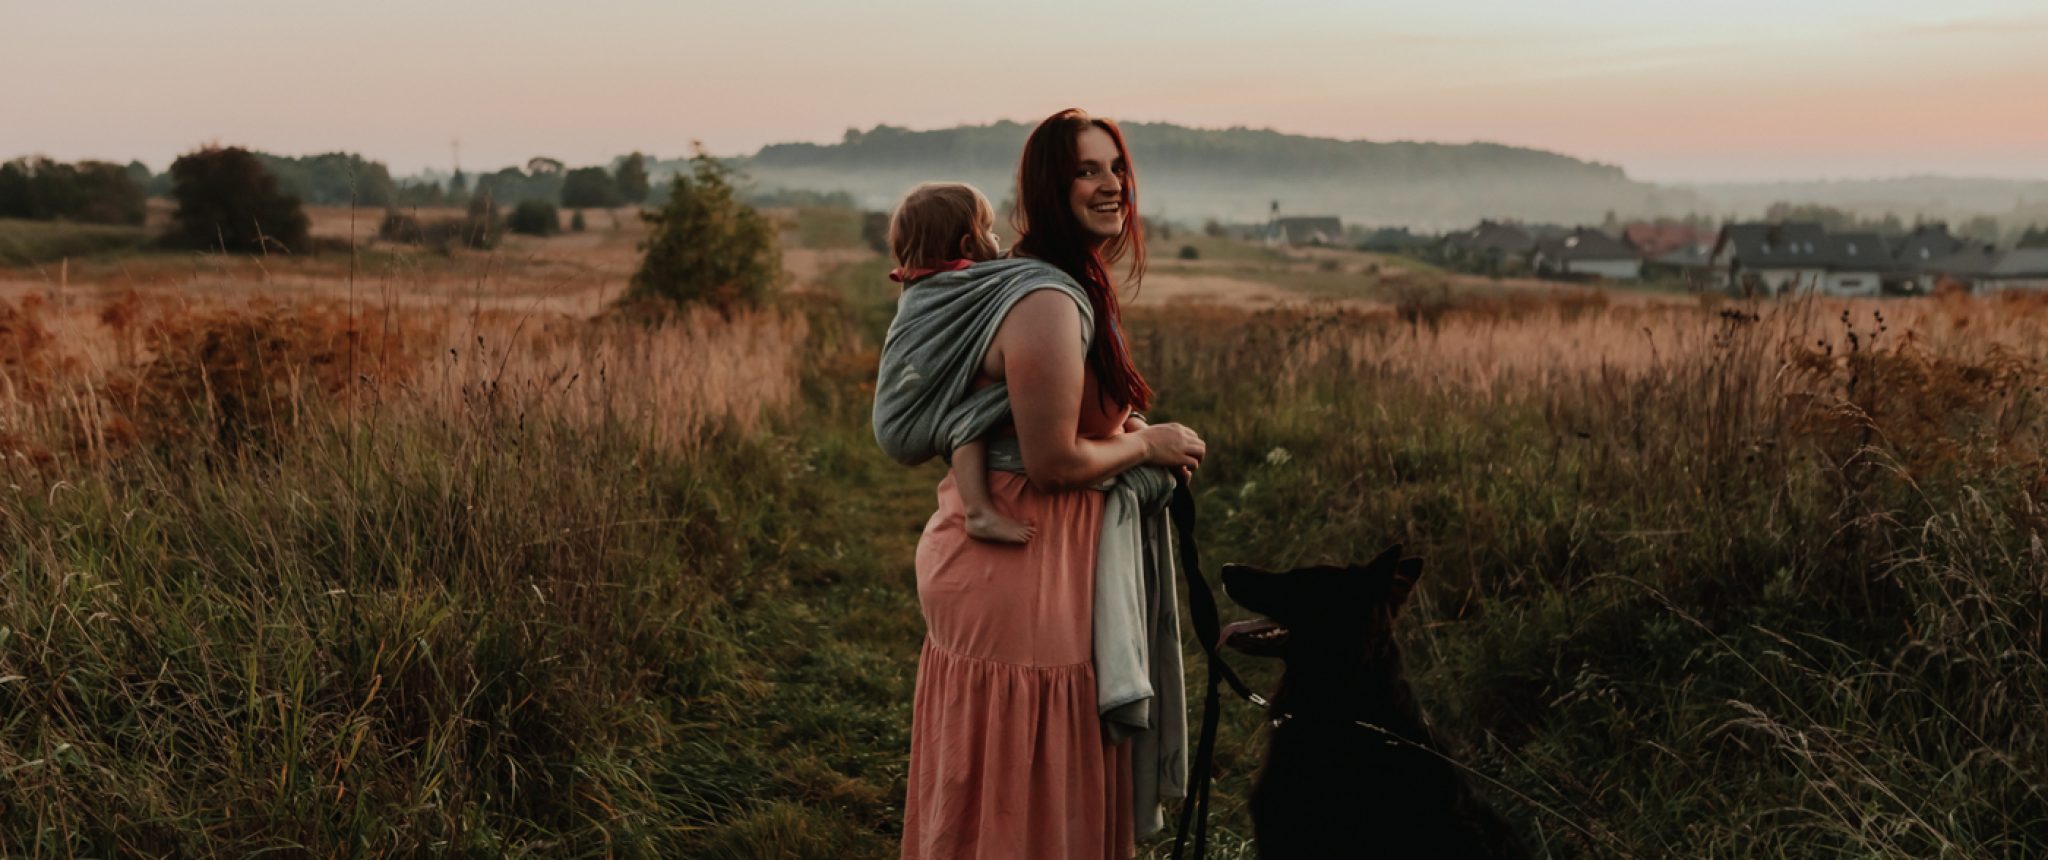 Matka stojąca na łące z córką w chuście na plecach obok, której stoi owczarek niemiecki.